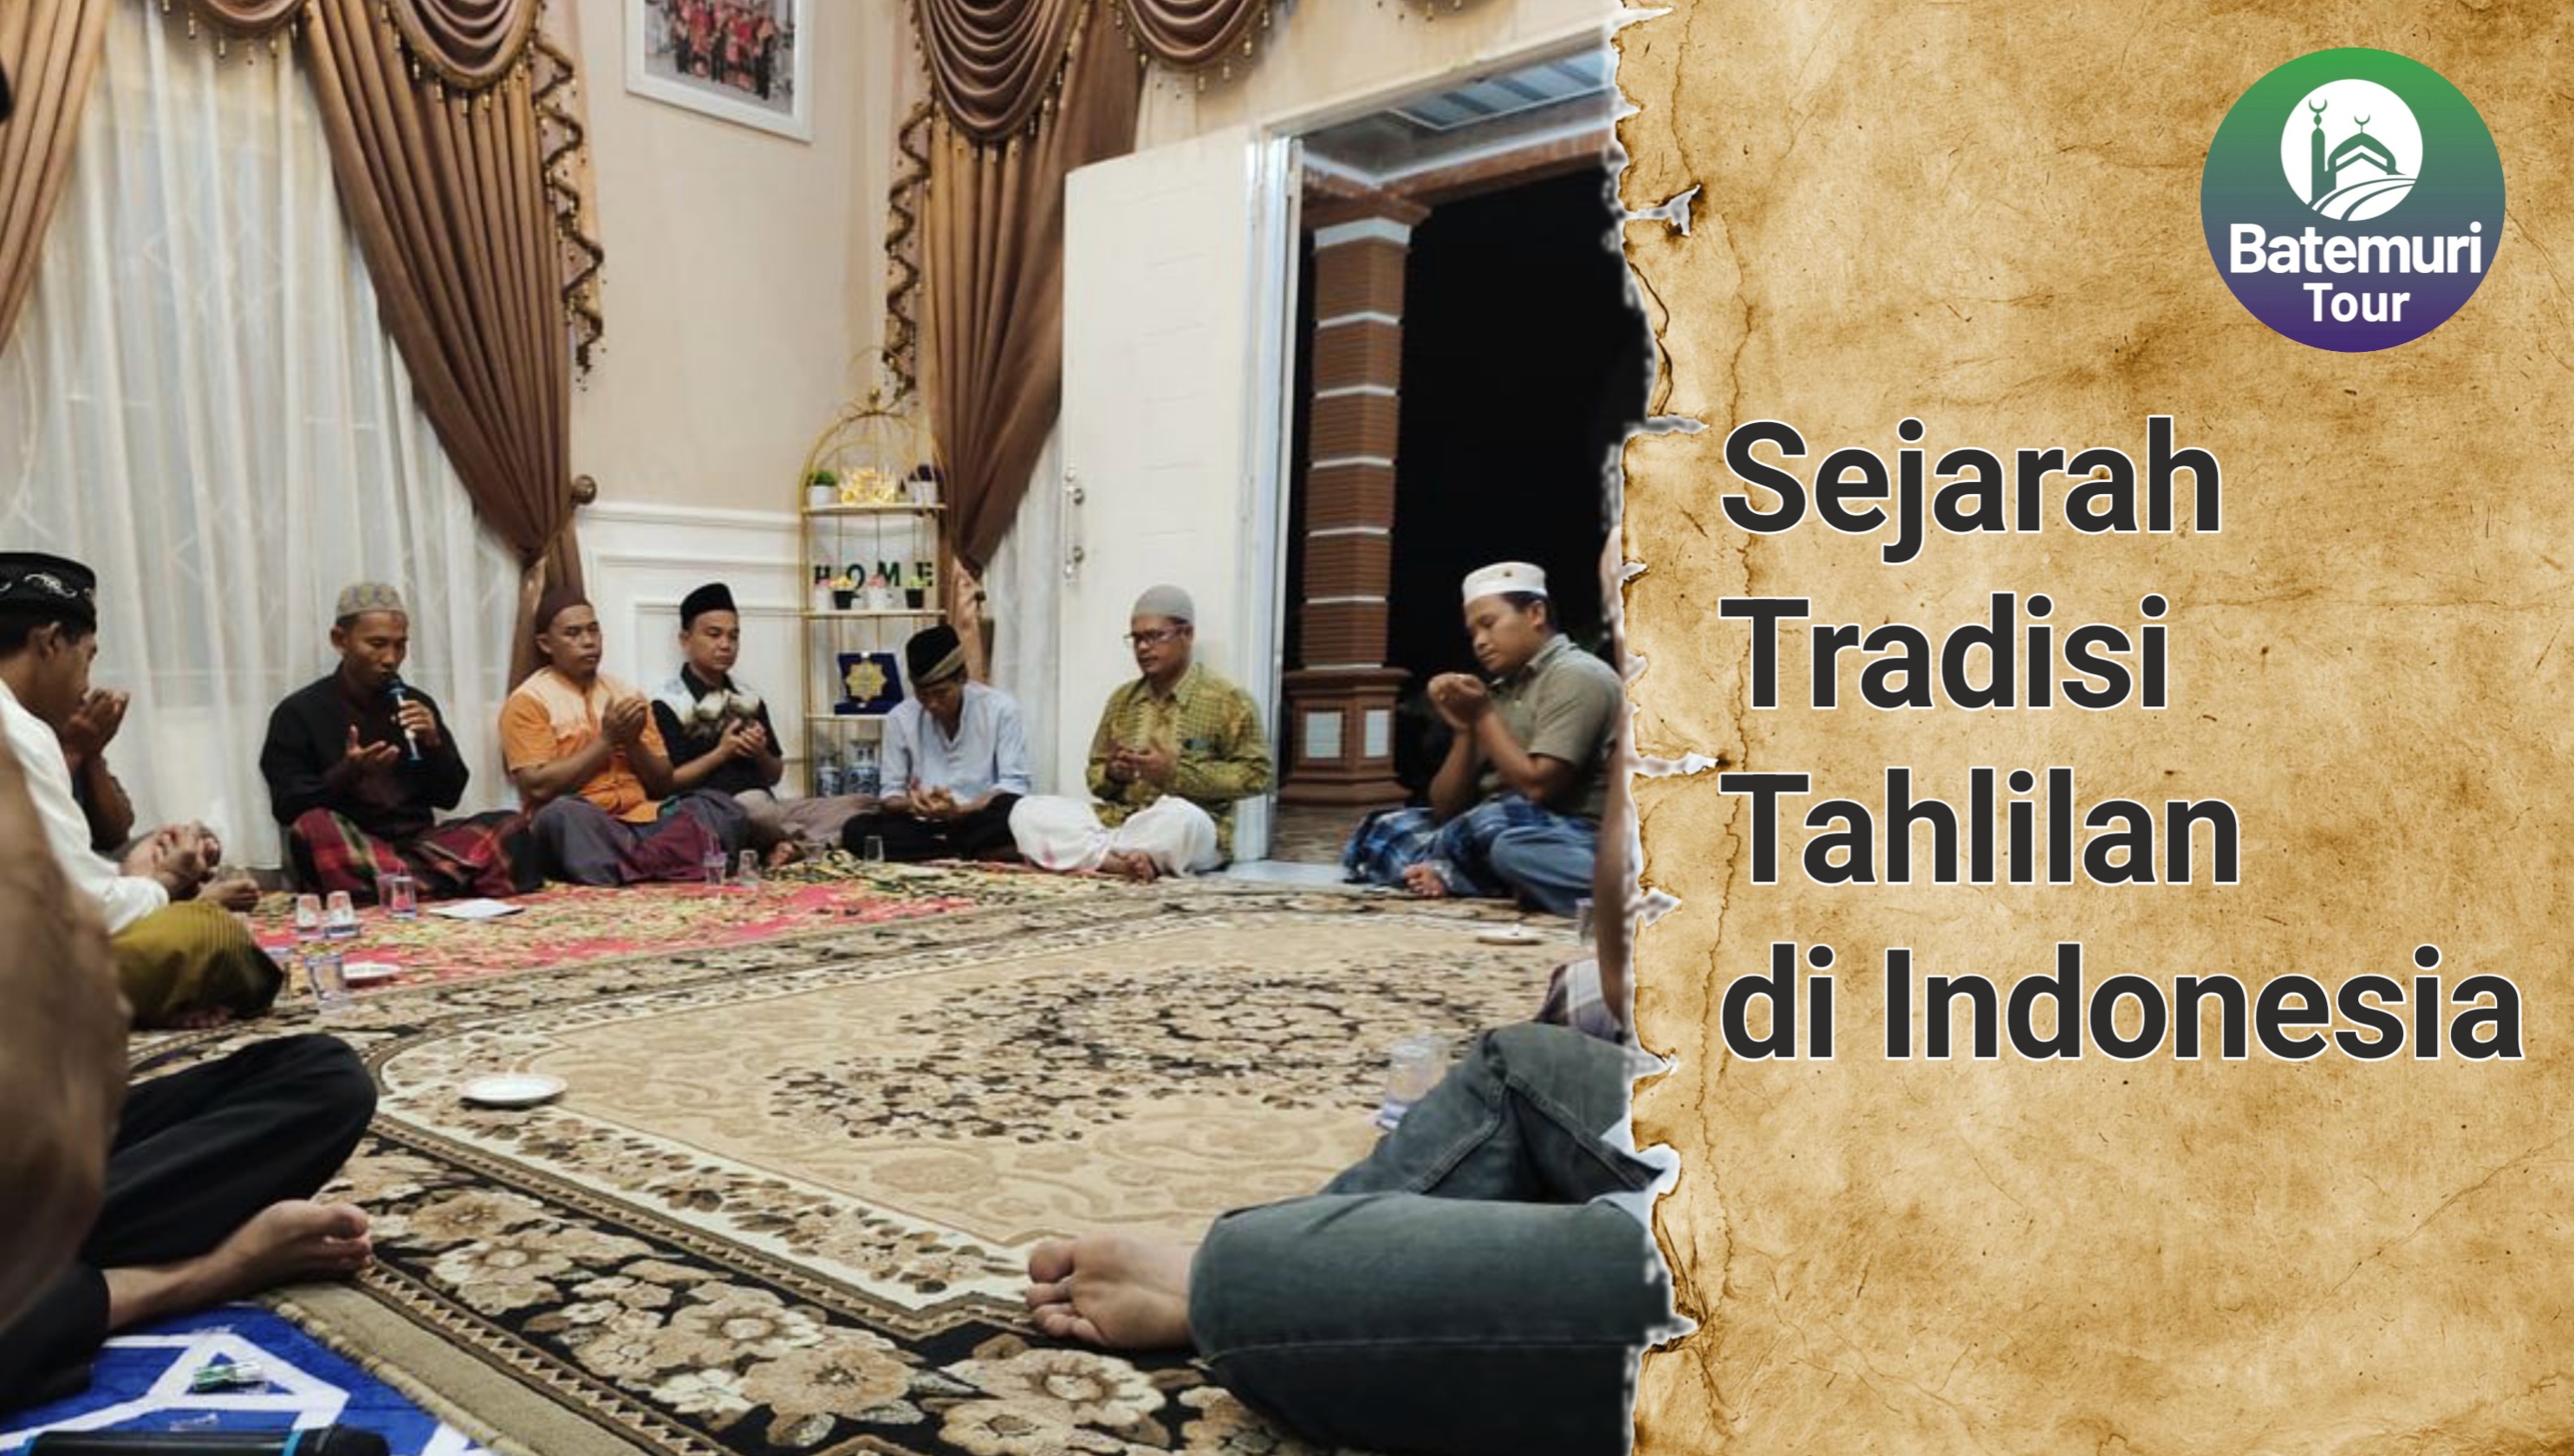 Sejarah Tradisi Tahlilan di Indonesia